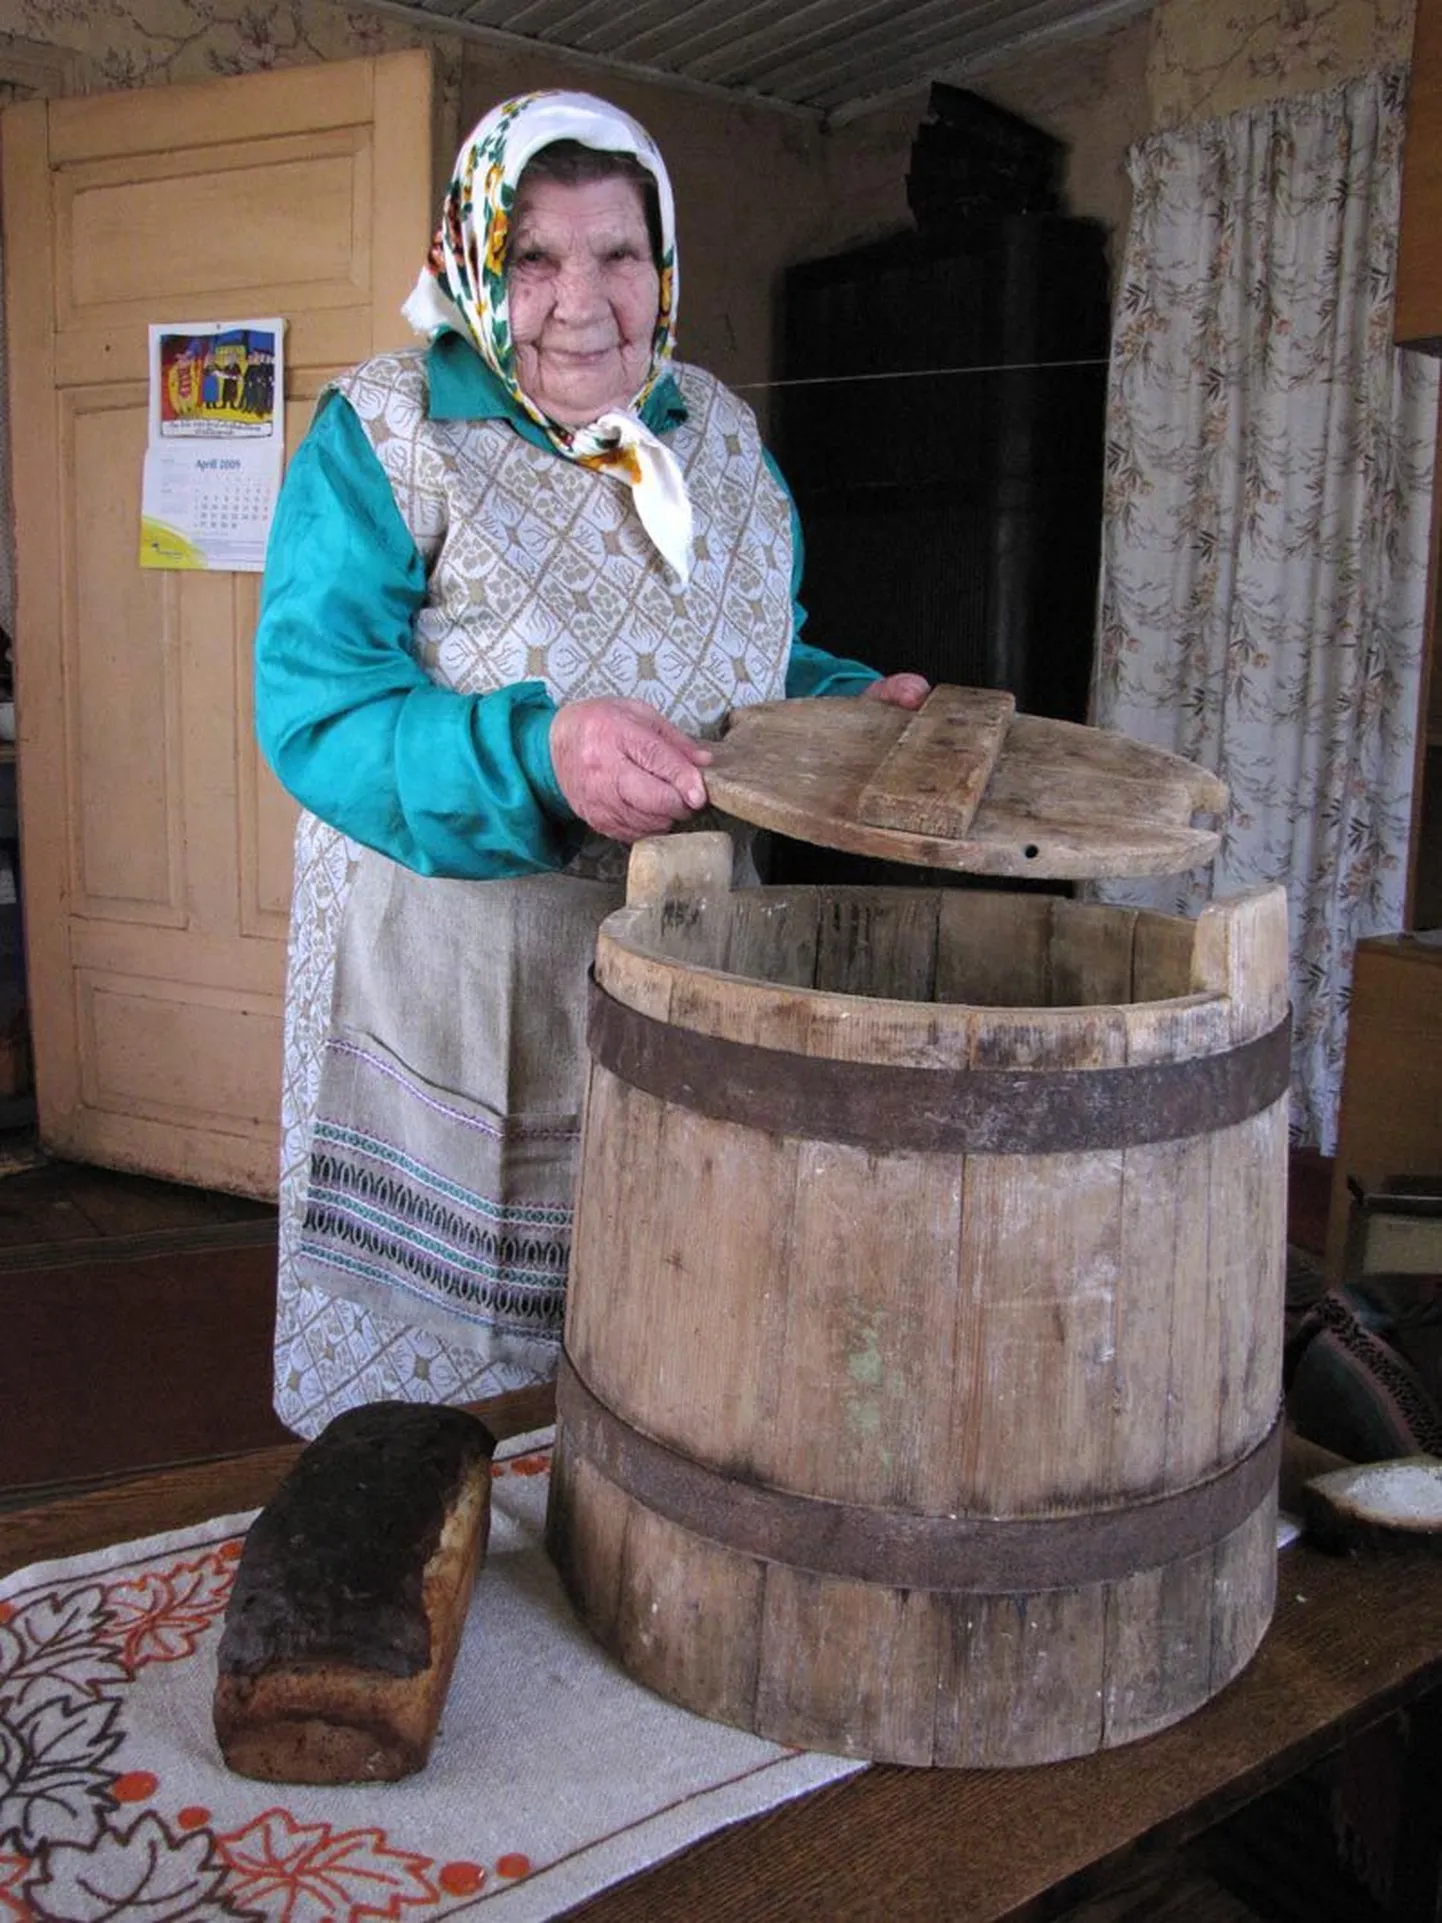 Selles astjas on 86aastane Leida Prank juba 50 aastat leivatainast kergitanud. Talvel ta astjat ei pesegi, kraabib niisama puhtaks, suveajal aga tuleb see hallituse vältimiseks siiski üle loputada.